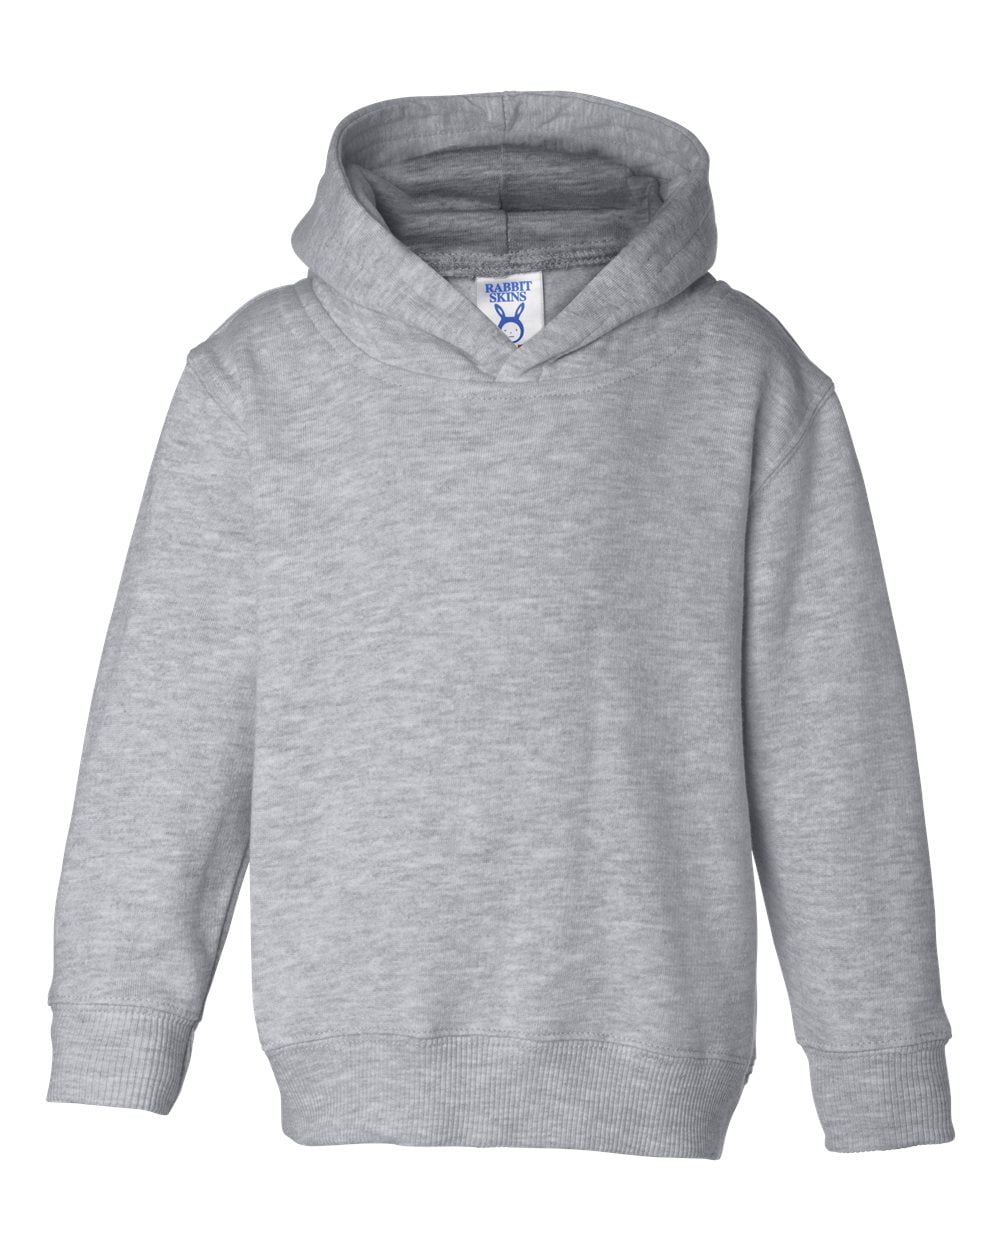 White 4T Rabbit Skins Little Boys Zip Jersey-Lined Hooded Sweatshirt 